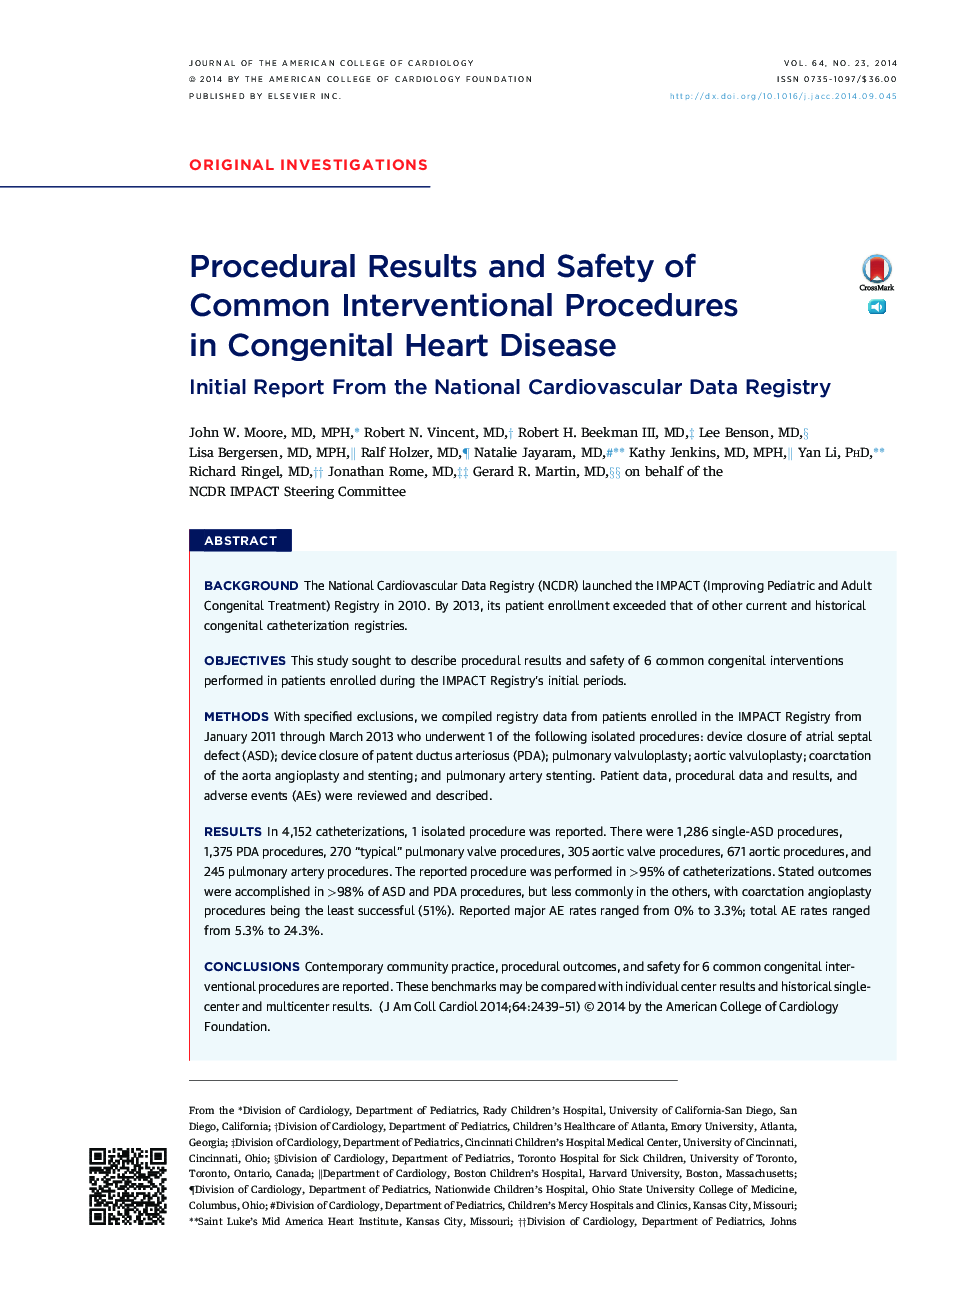 نتایج رویه ای و ایمنی روش های مداخله ای مشترک در بیماری های مادرزادی قلب: گزارش اولیه از ثبت ملی آمار قلب و عروق 